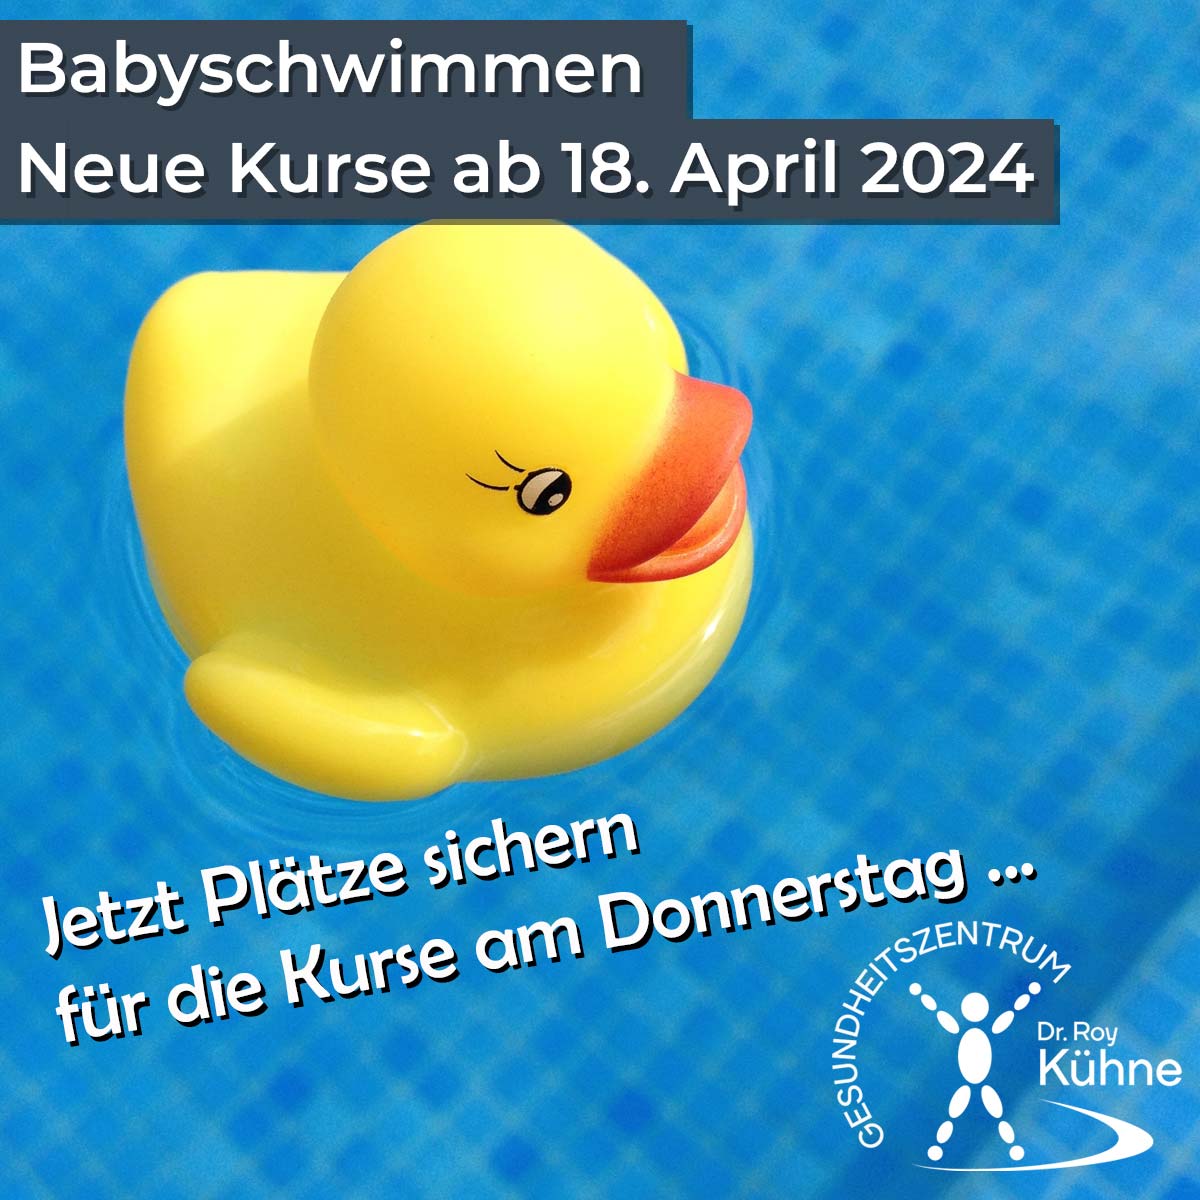 Babyschwimmen donnerstags mit Desiree im Gesundheitazentrum Dr. Roy Kühne Northeim ab dem 18. April 2024